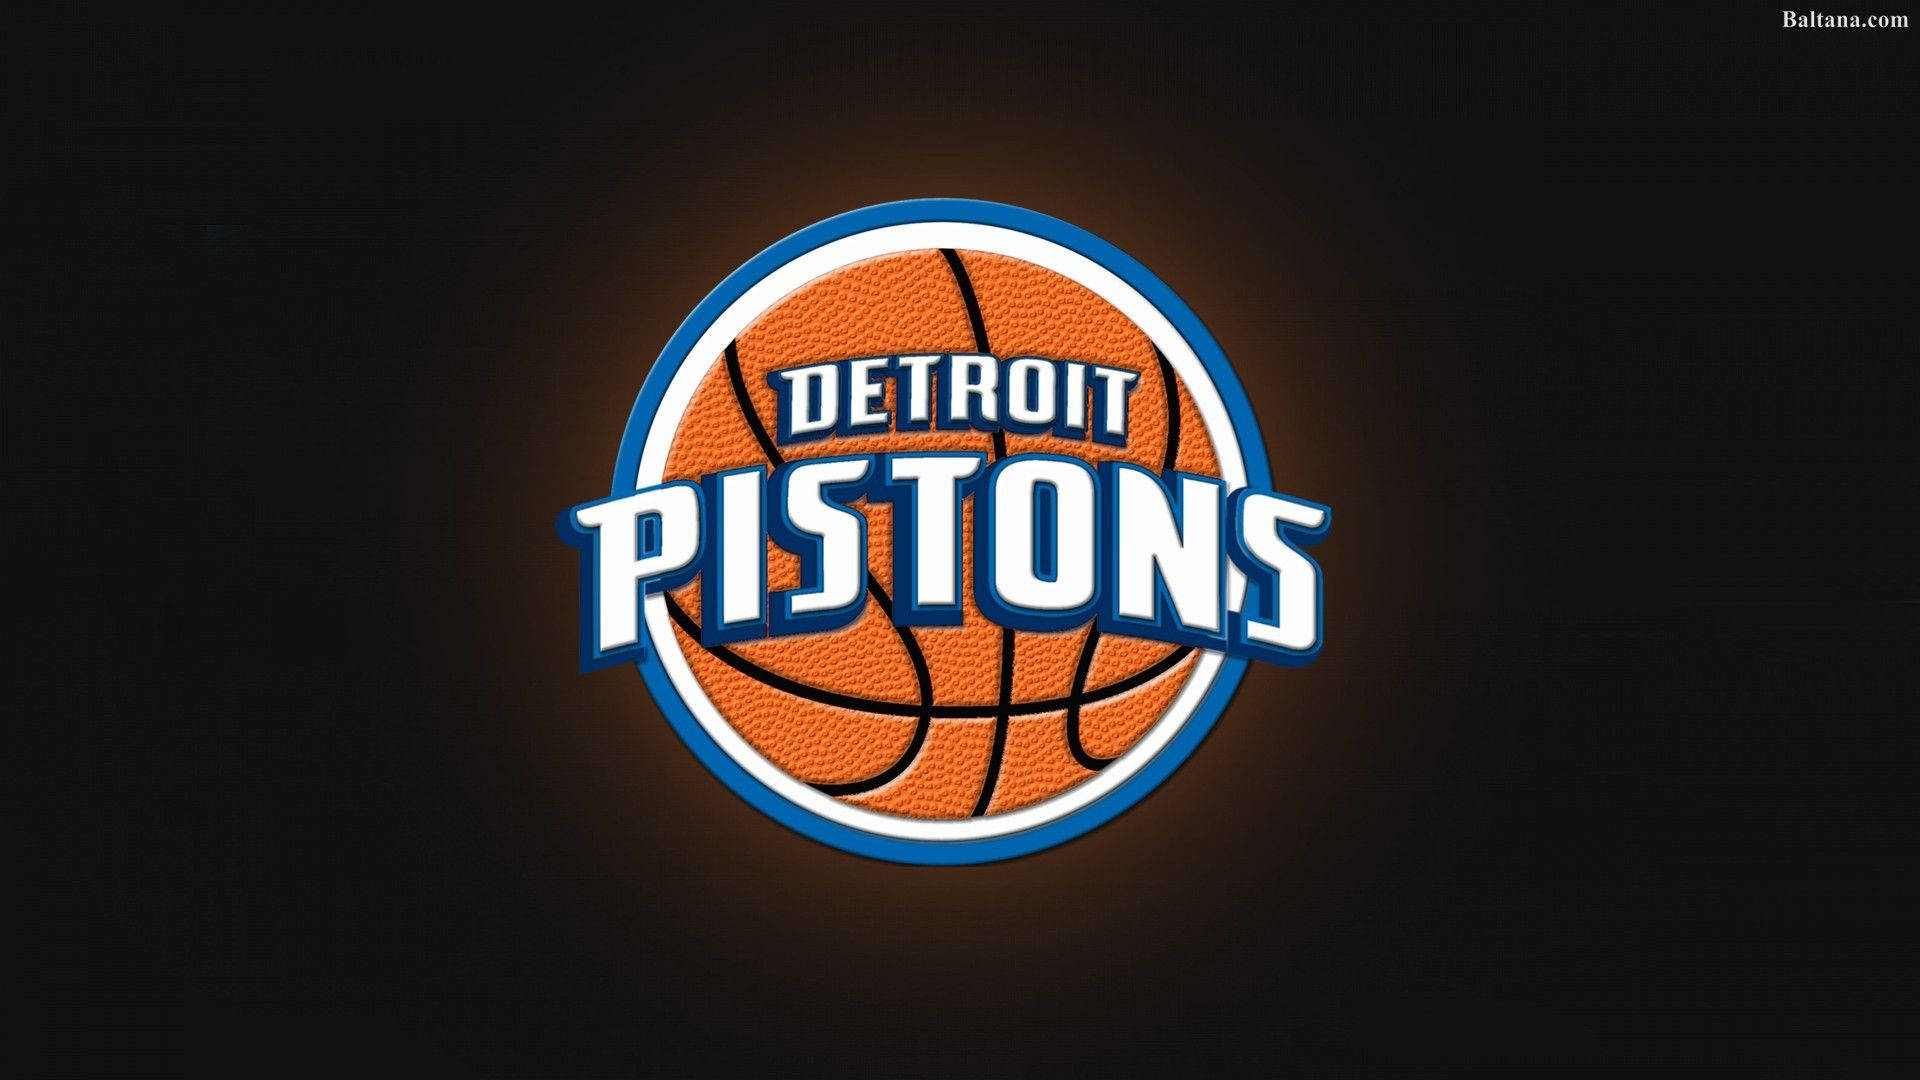 Detroit Pistons Detailed Basketball Illustration Background